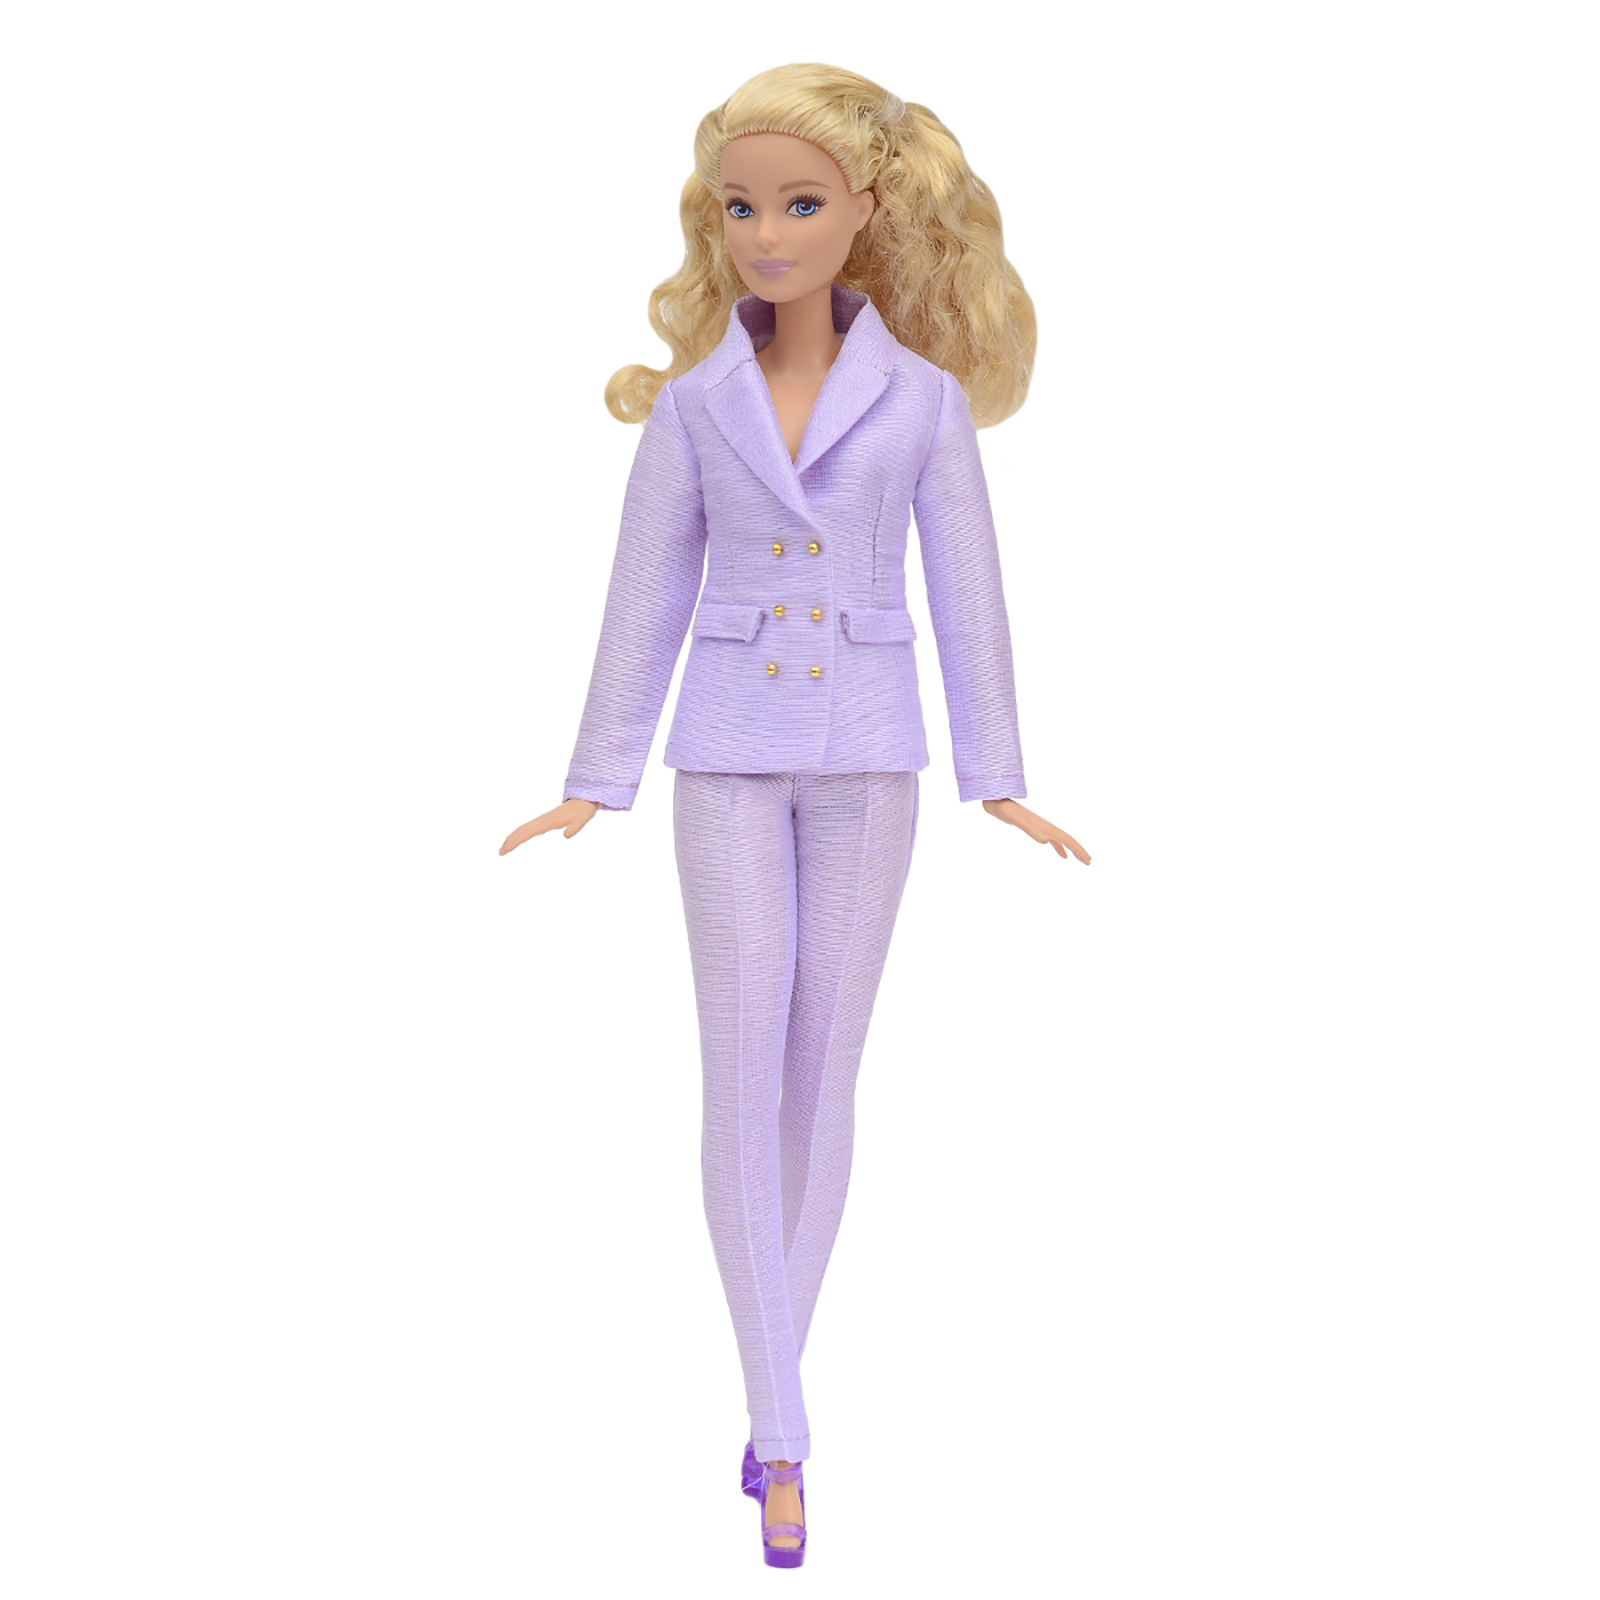 Шелковый брючный костюм Эленприв Фиолетовый для куклы 29 см типа Барби FA-011-11 - фото 10